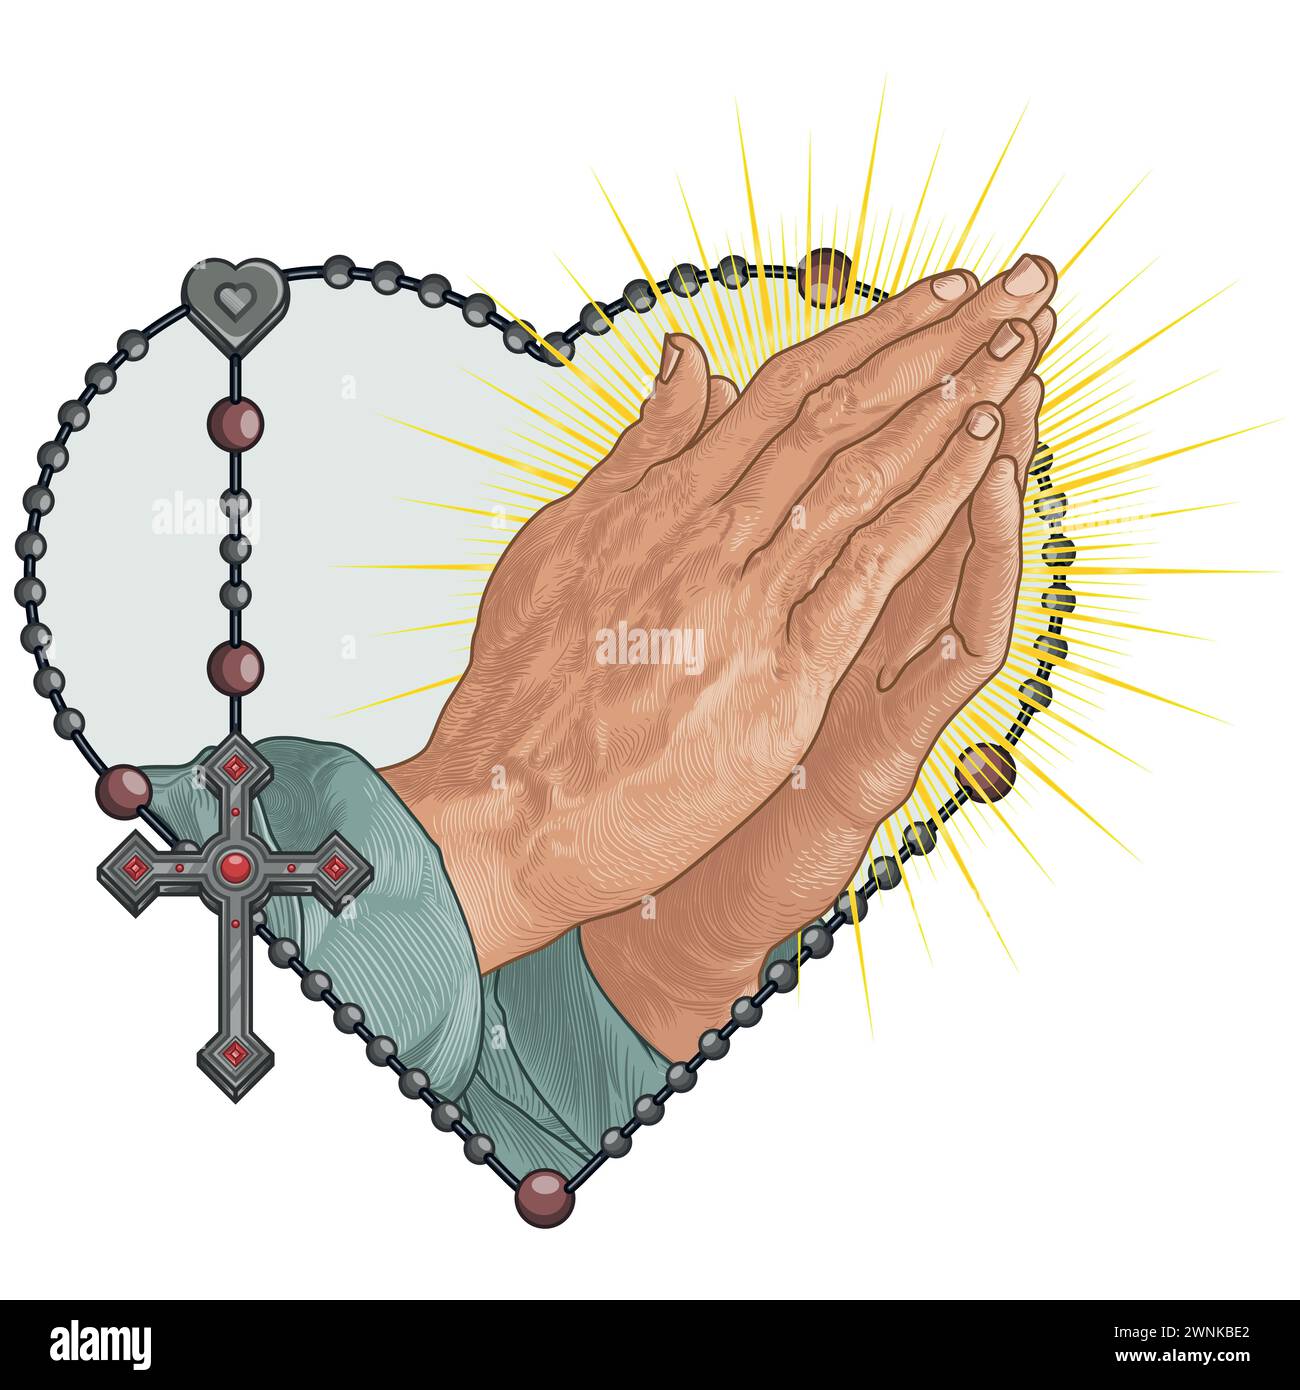 Dessin vectoriel des mains de prière avec le rosaire en forme de coeur, rosaire avec la croix chrétienne, symbole de la religion catholique Illustration de Vecteur